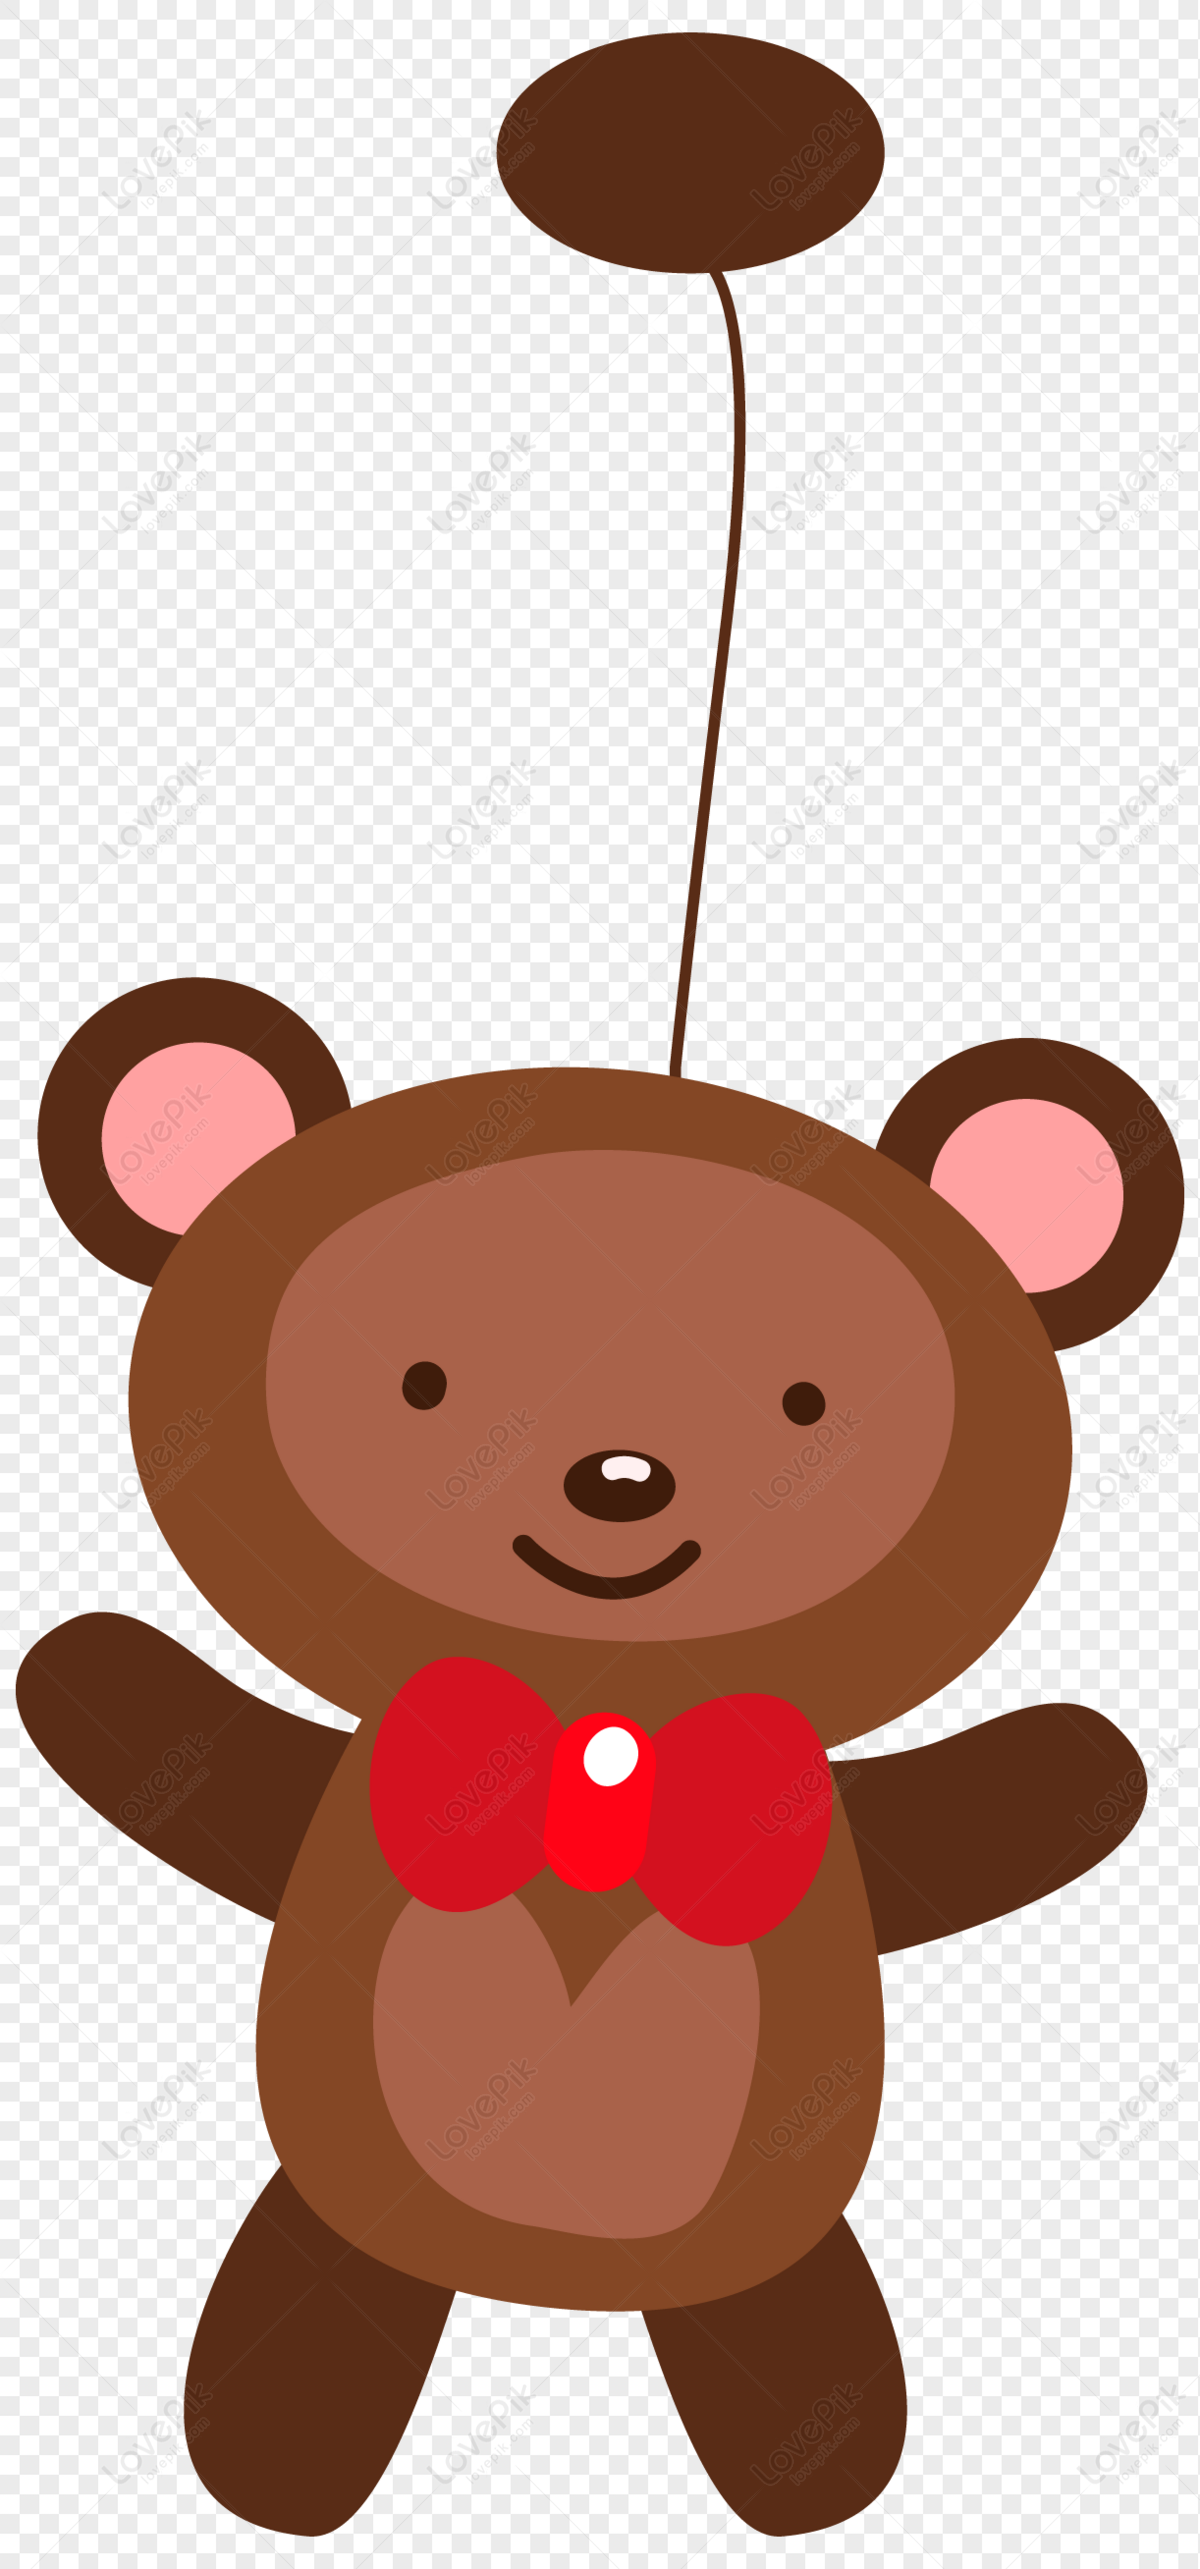 Với những người yêu thích gấu bông và các vật dụng handmade, hình ảnh gấu teddy sẽ khiến bạn thích thú. Hãy xem bức tranh này và tận hưởng sự đẹp đẽ và tỉ mỉ của nó!